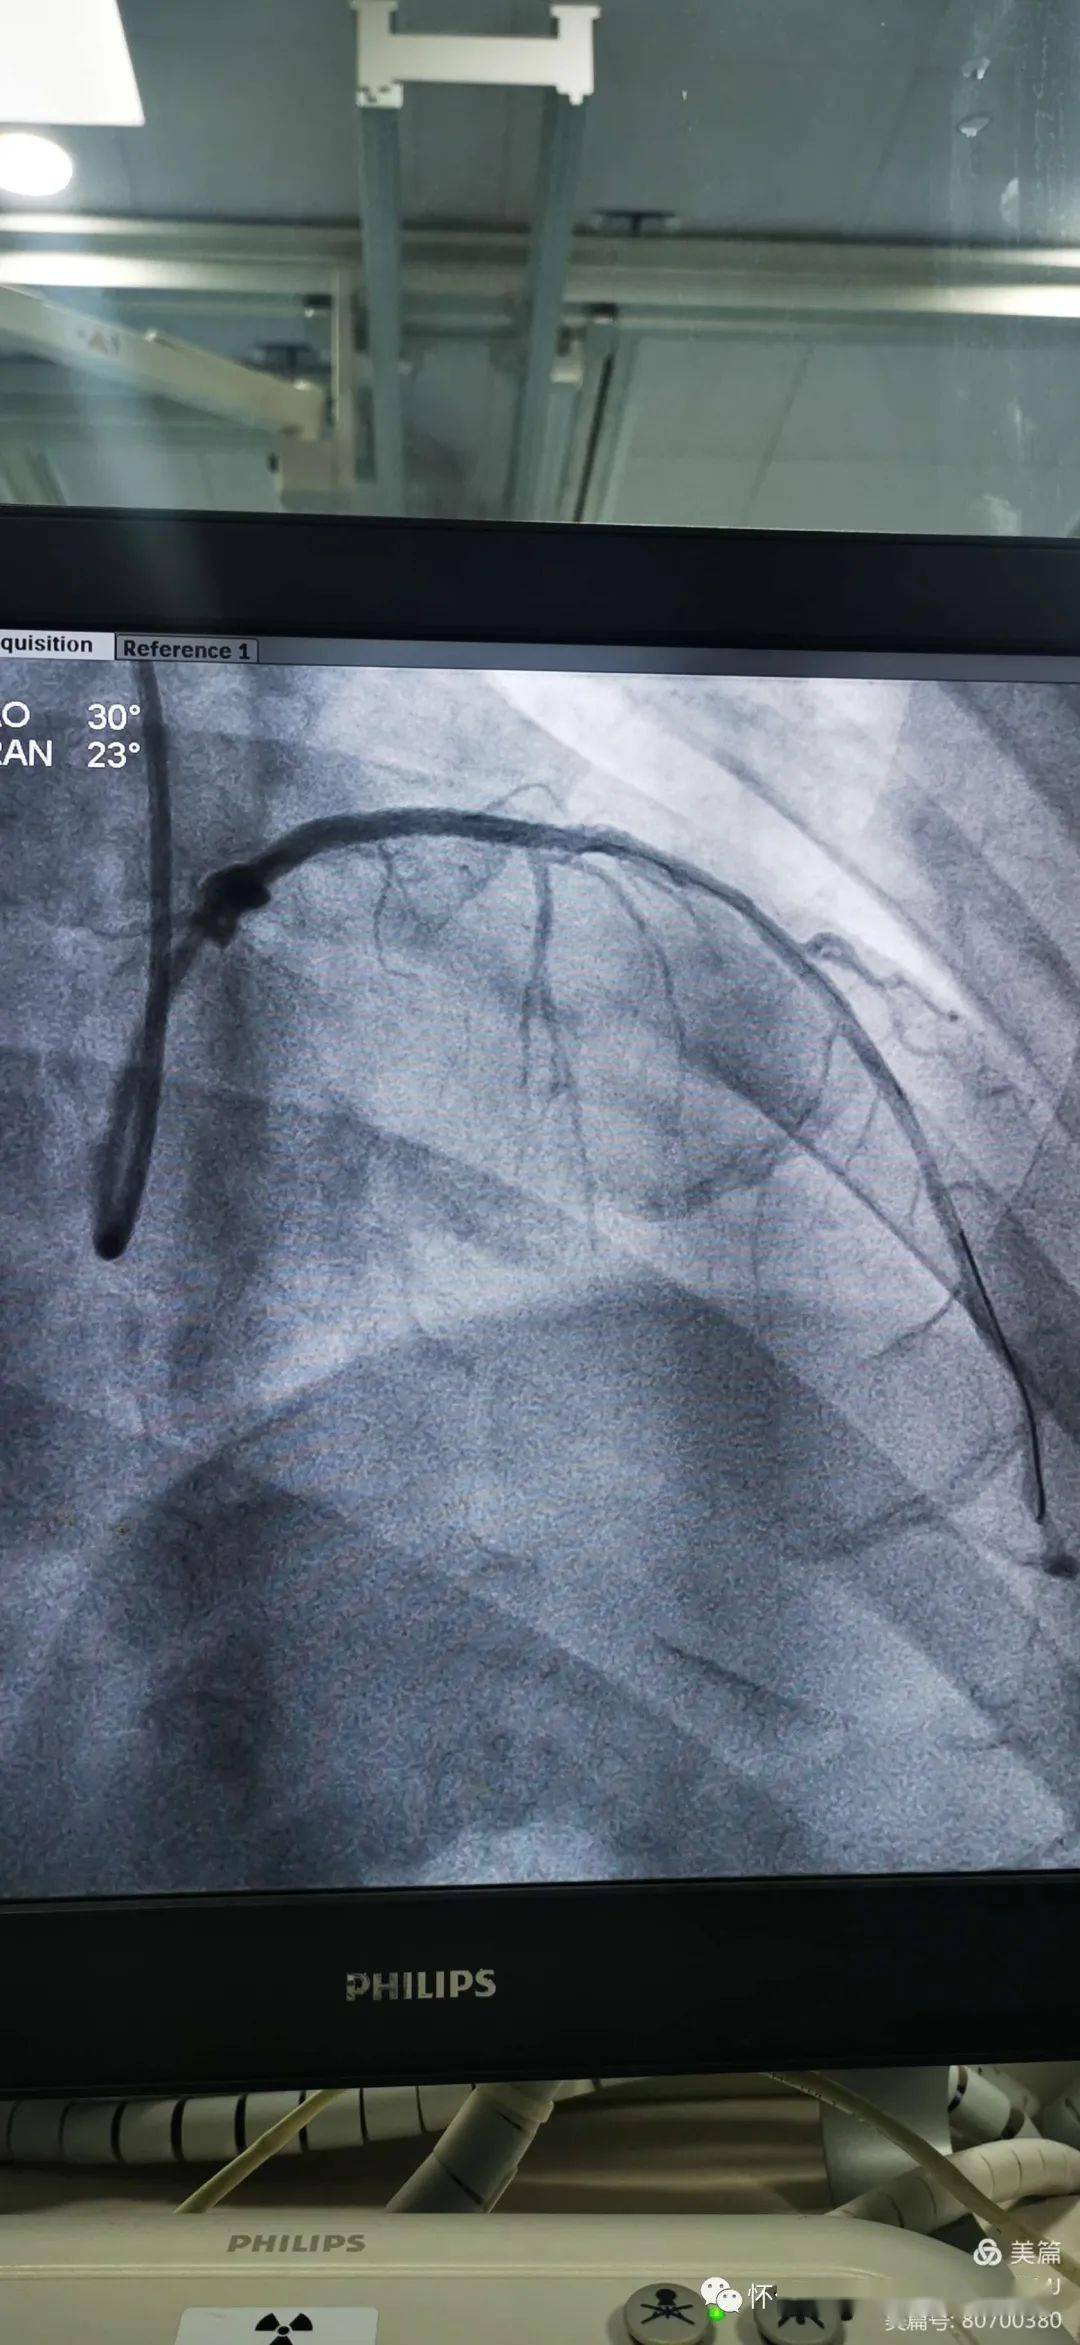 【特别关注】怀仁市人民医院介入导管室完成冠脉造影11例,支架植入2例